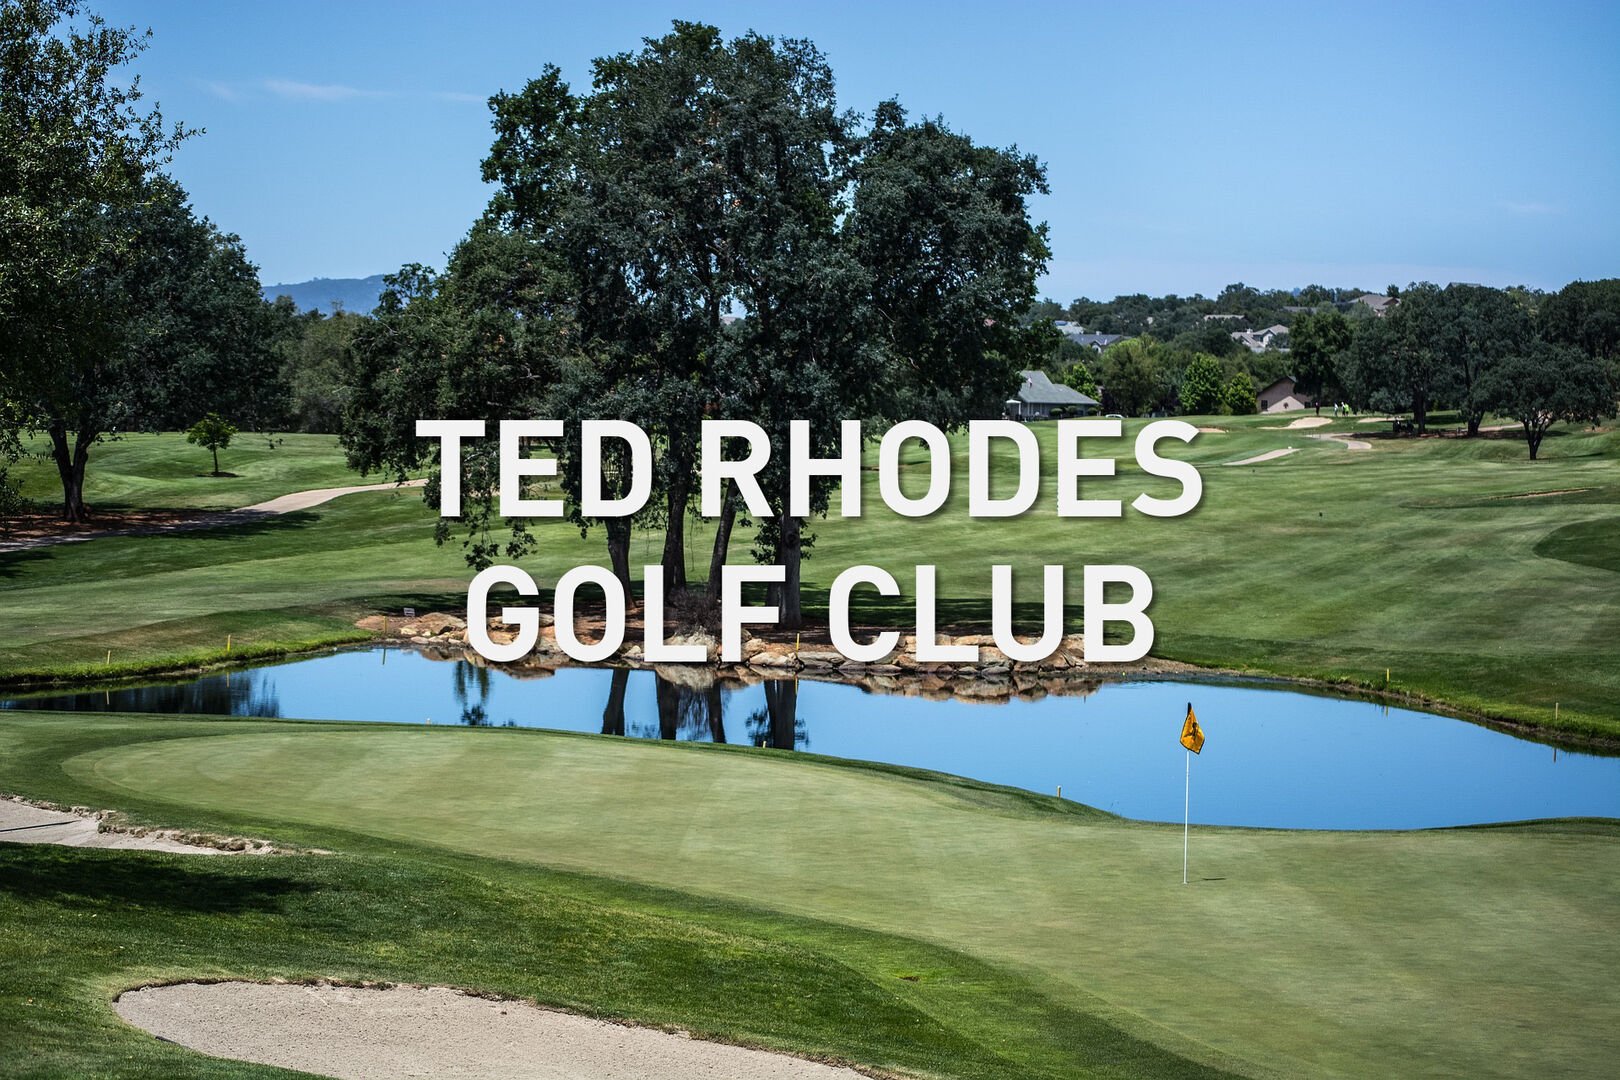 10 mins: Ted Rhodes Golf Club